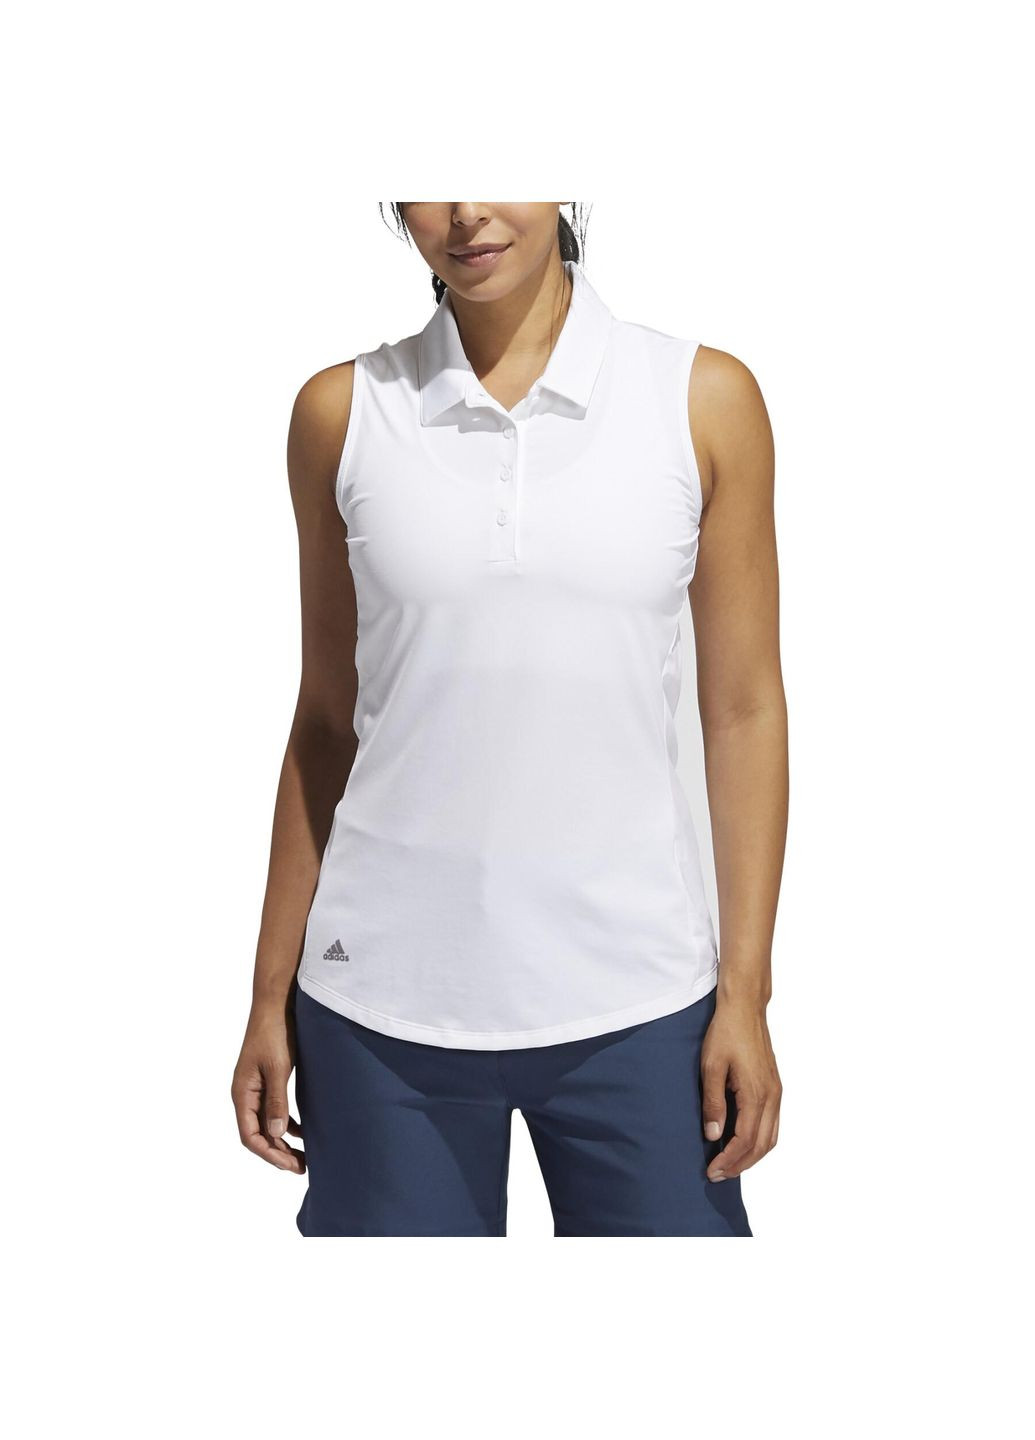 Белая летняя футболка поло без рукавов adidas Ultimate 365 Golf